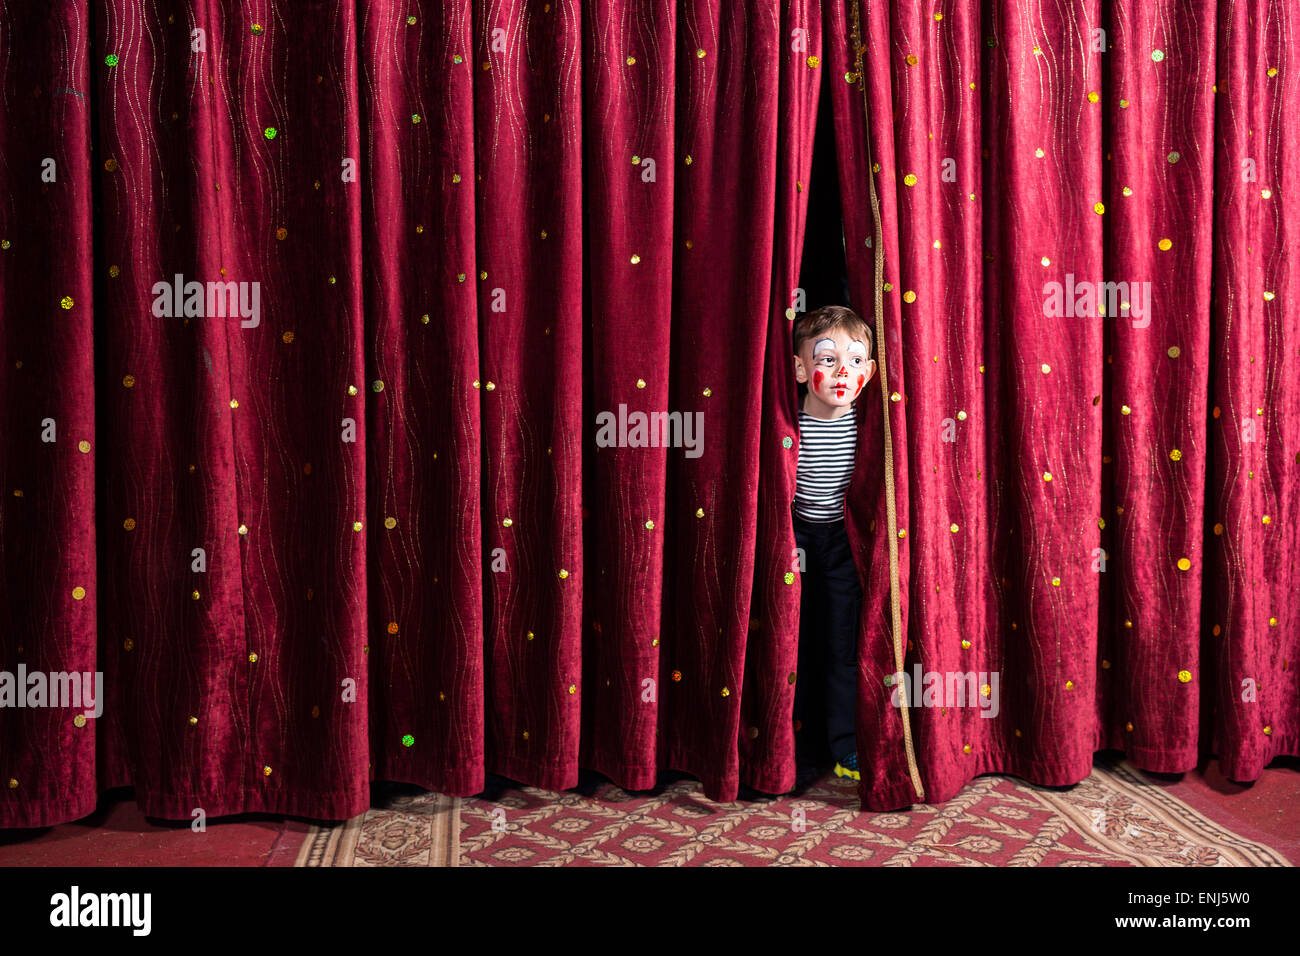 Aufgeregt, kleinen Jungen auf Bühne peering zwischen die Vorhänge in seinem Kostüm und Make-up warten auf die Leistung zu beginnen Stockfoto